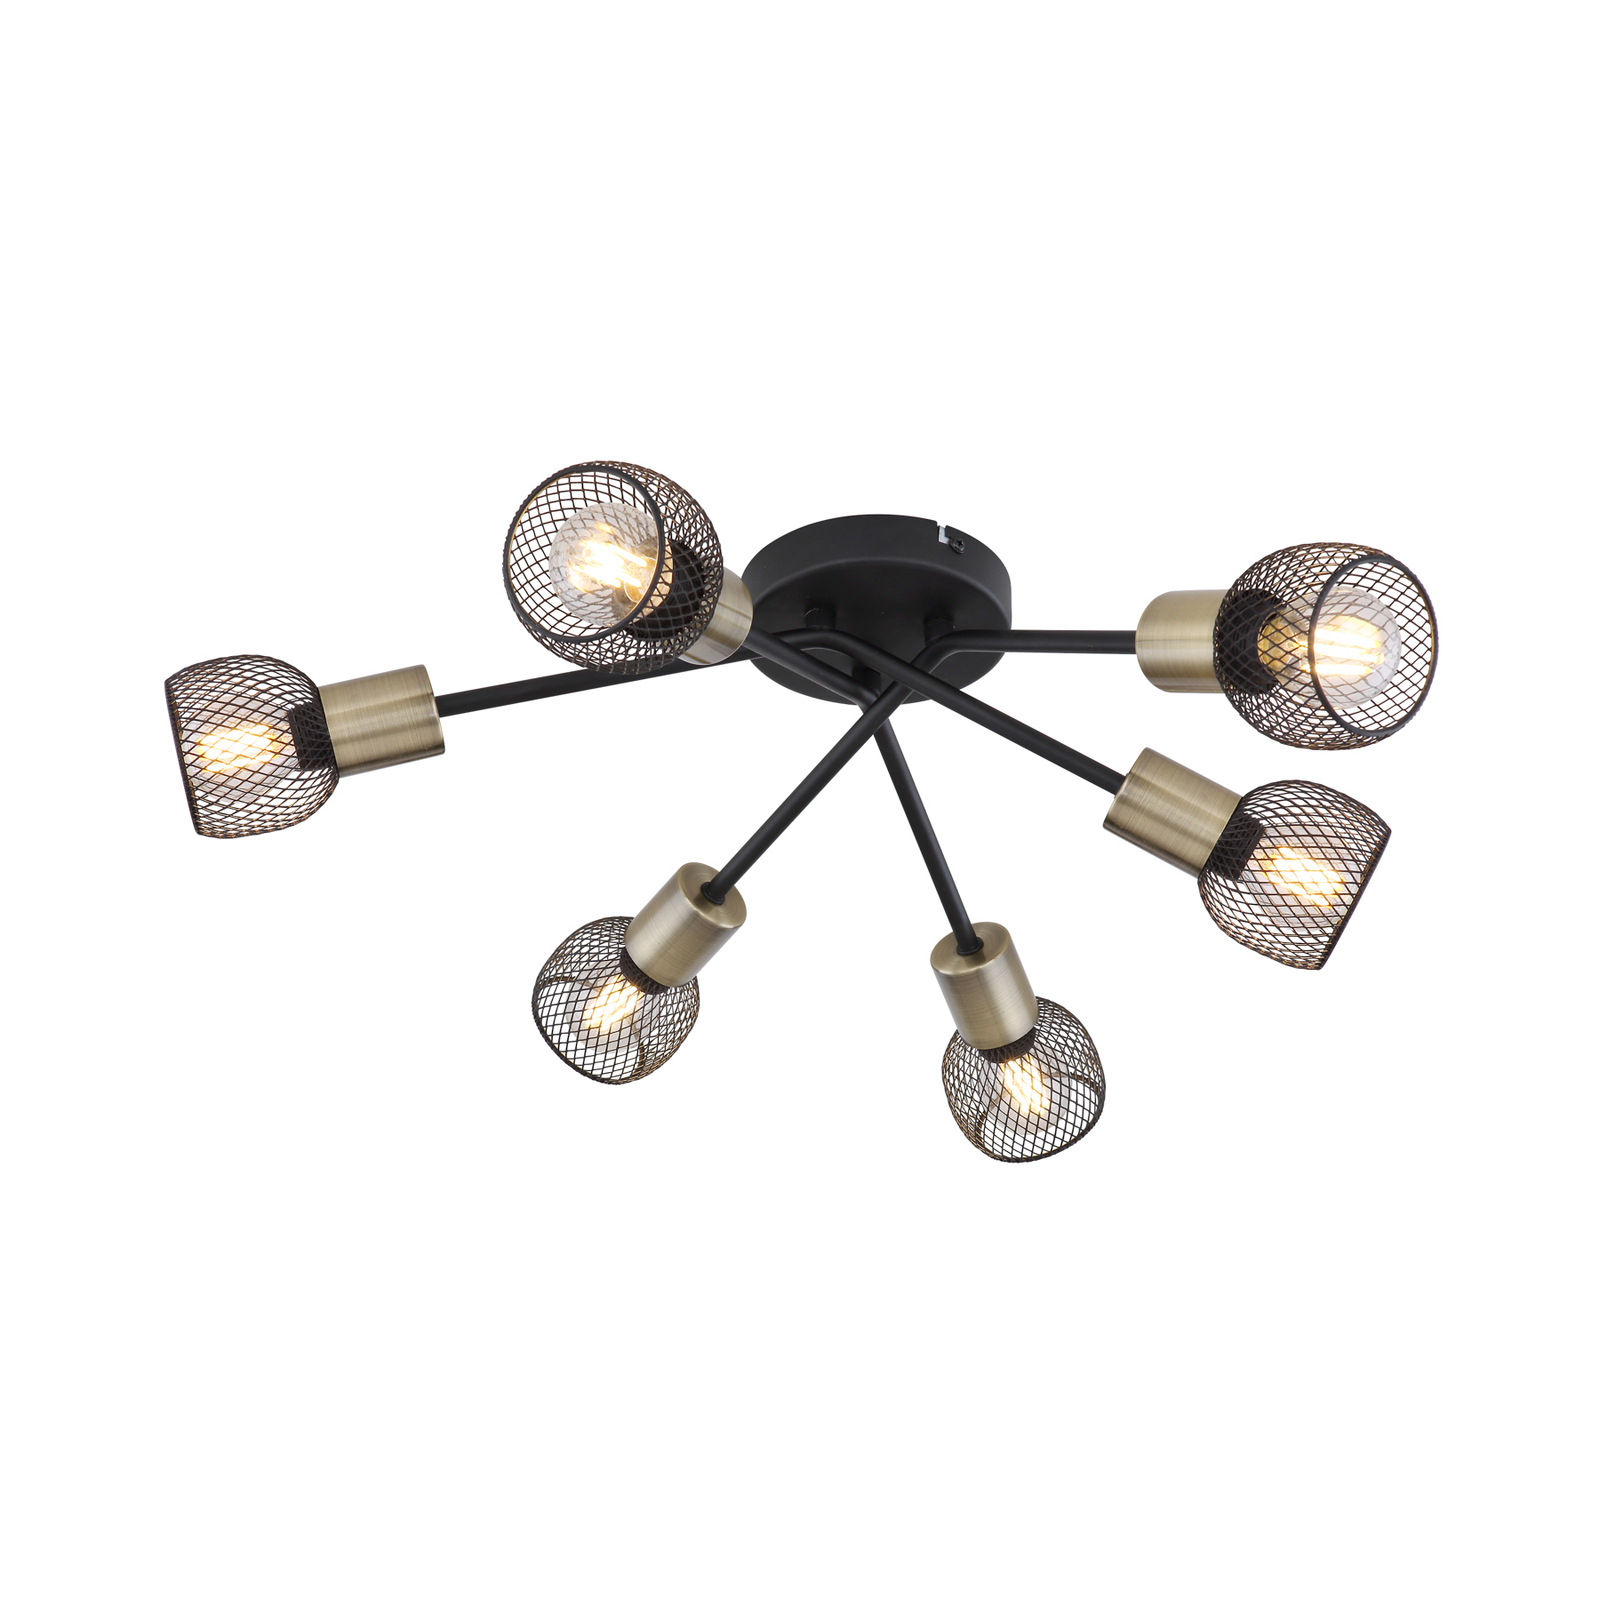 Fiastra ceiling light, black/antique brass, 6-bulb